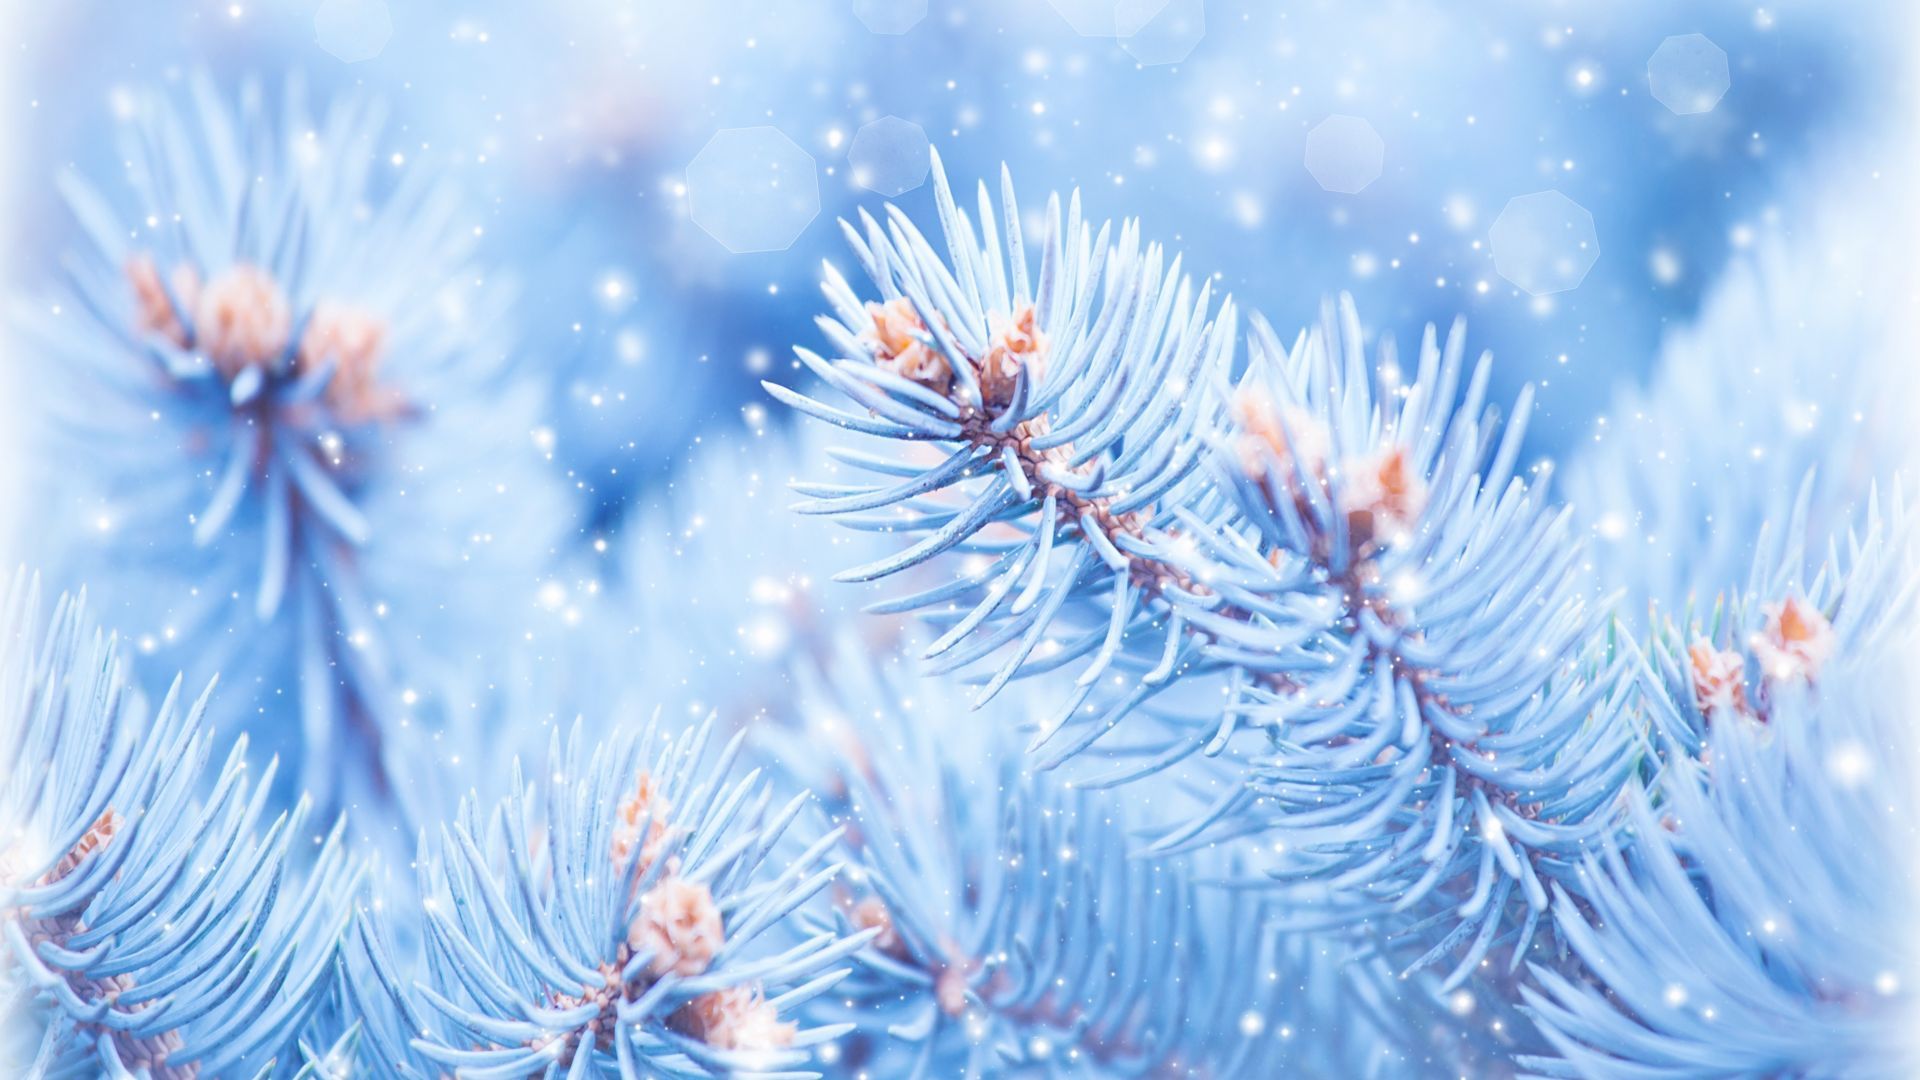 Fir Tree, 5k, 4k Wallpaper, Christmas, Winter, Blue Horizontal